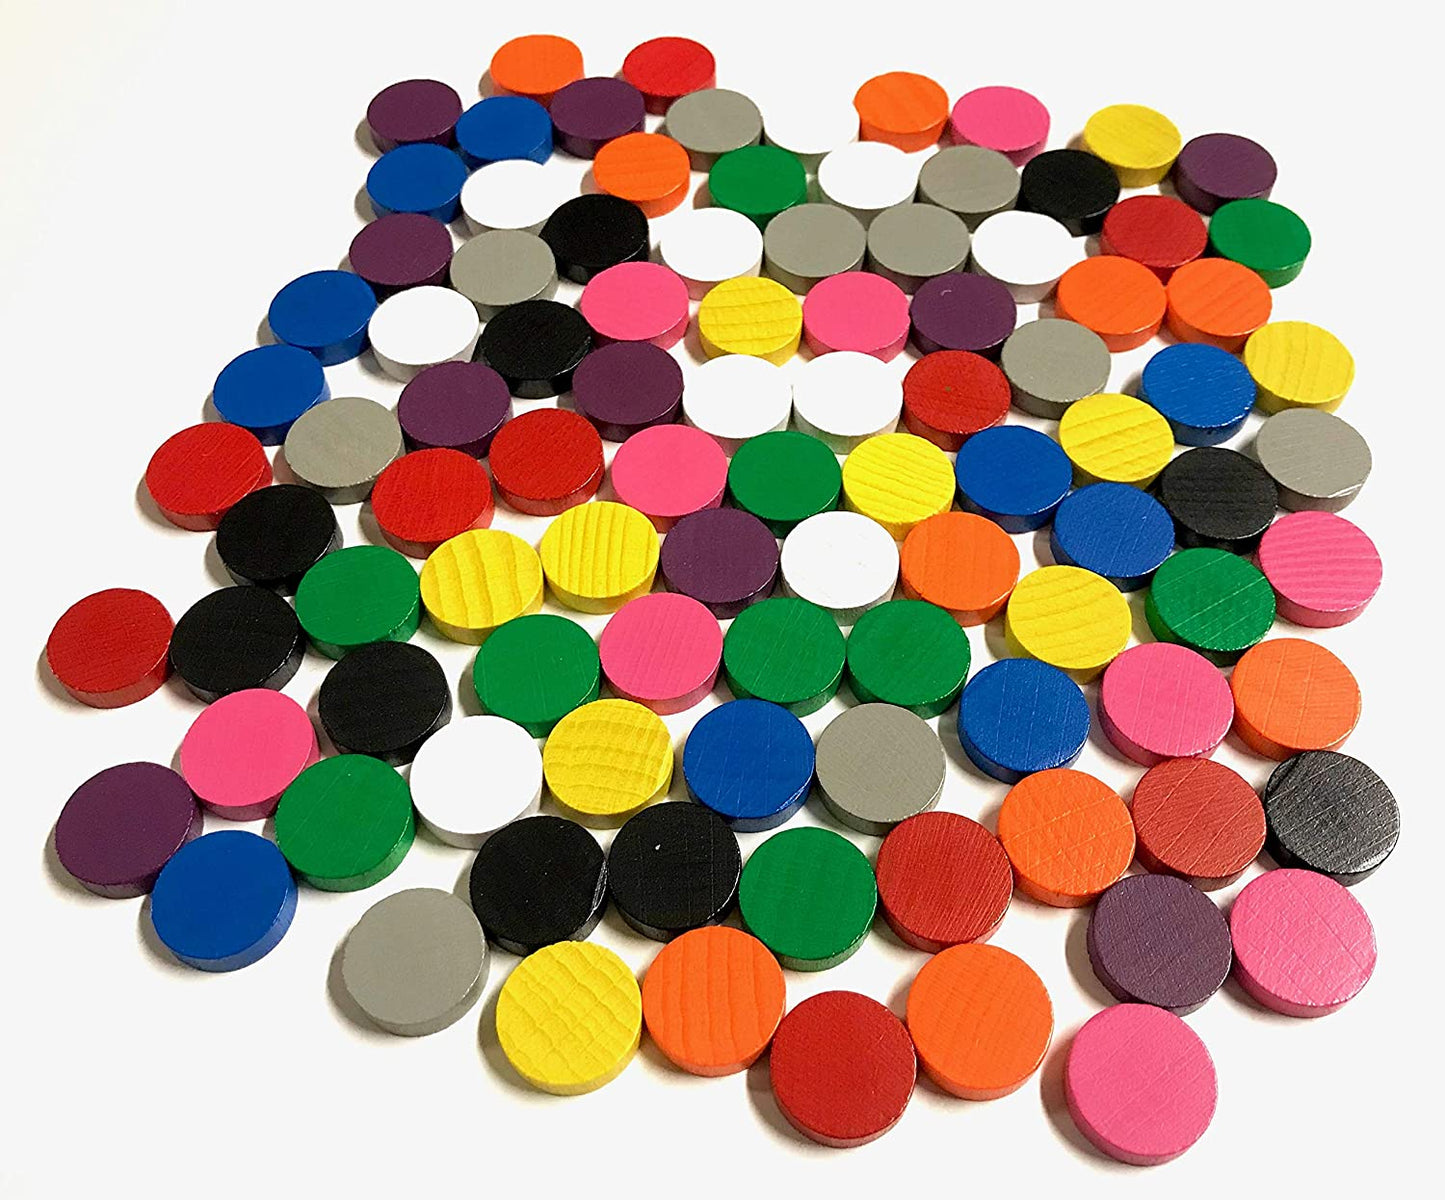 Spieltz Spielsteine - Spielchips Scheiben aus Holz 15/4 mm, farblich gemischt, verschiedene Farbsets verfügbar